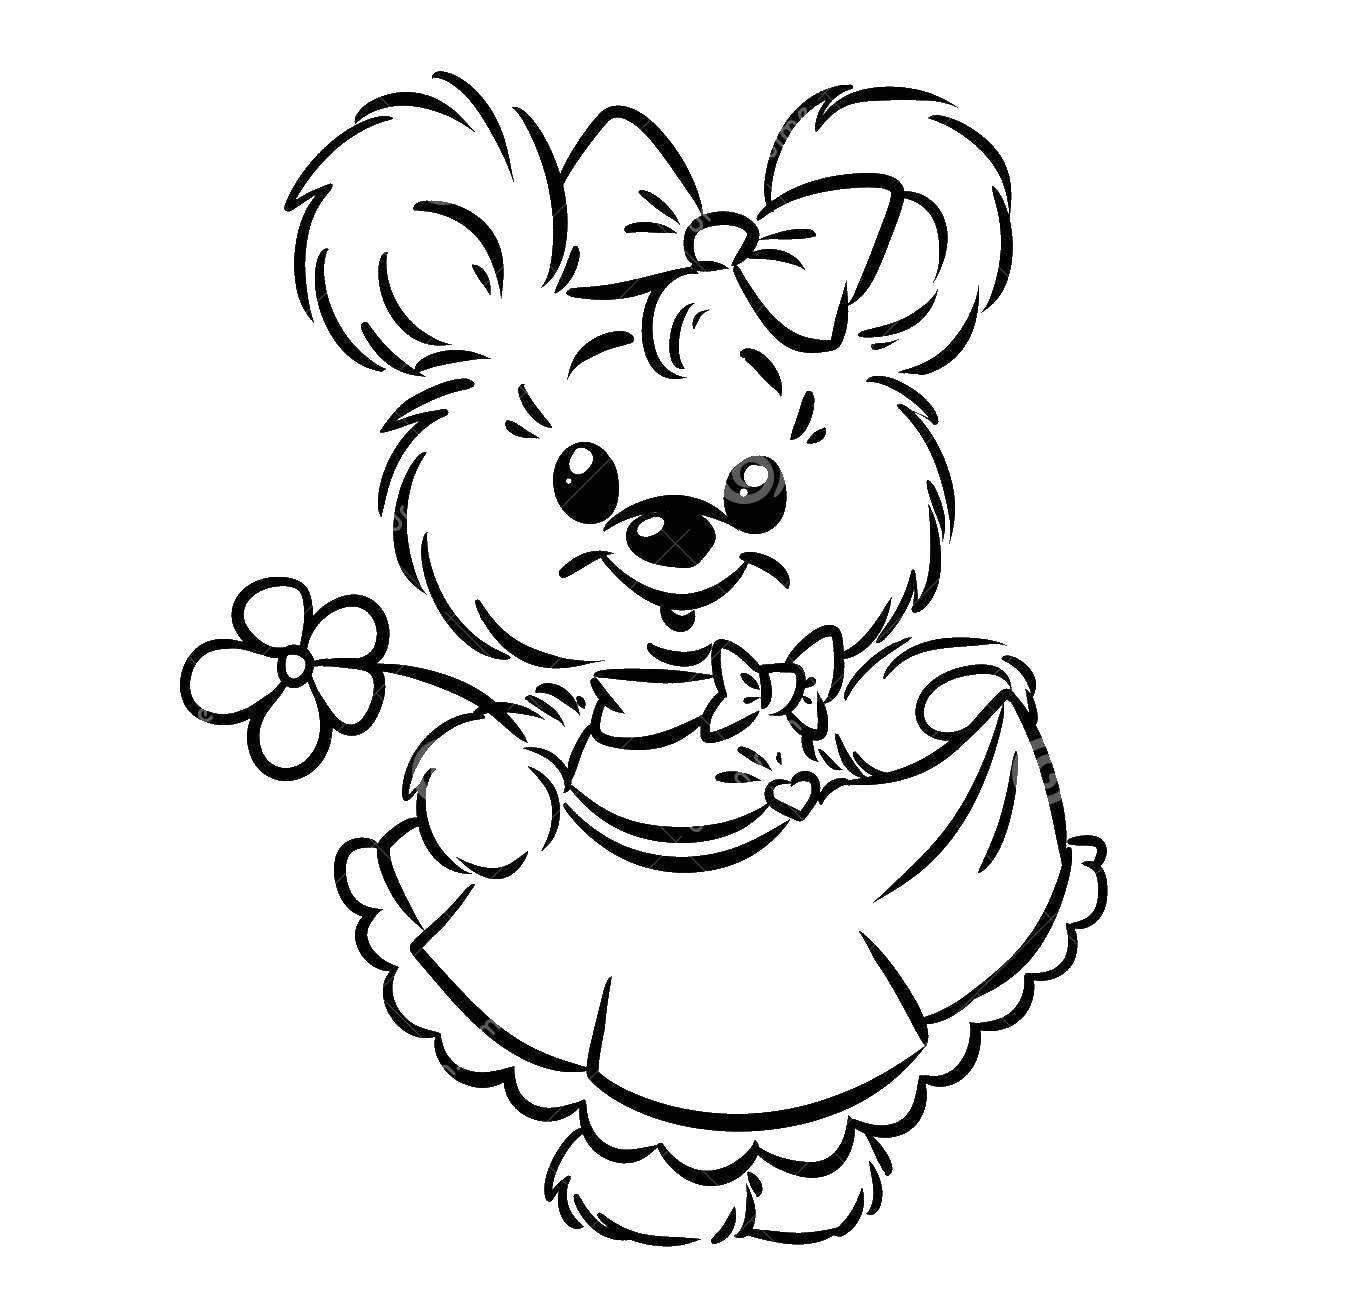 Название: Раскраска Маленькая девочка-меджвежонок с цветочком. Категория: Животные. Теги: Животные, мишка.